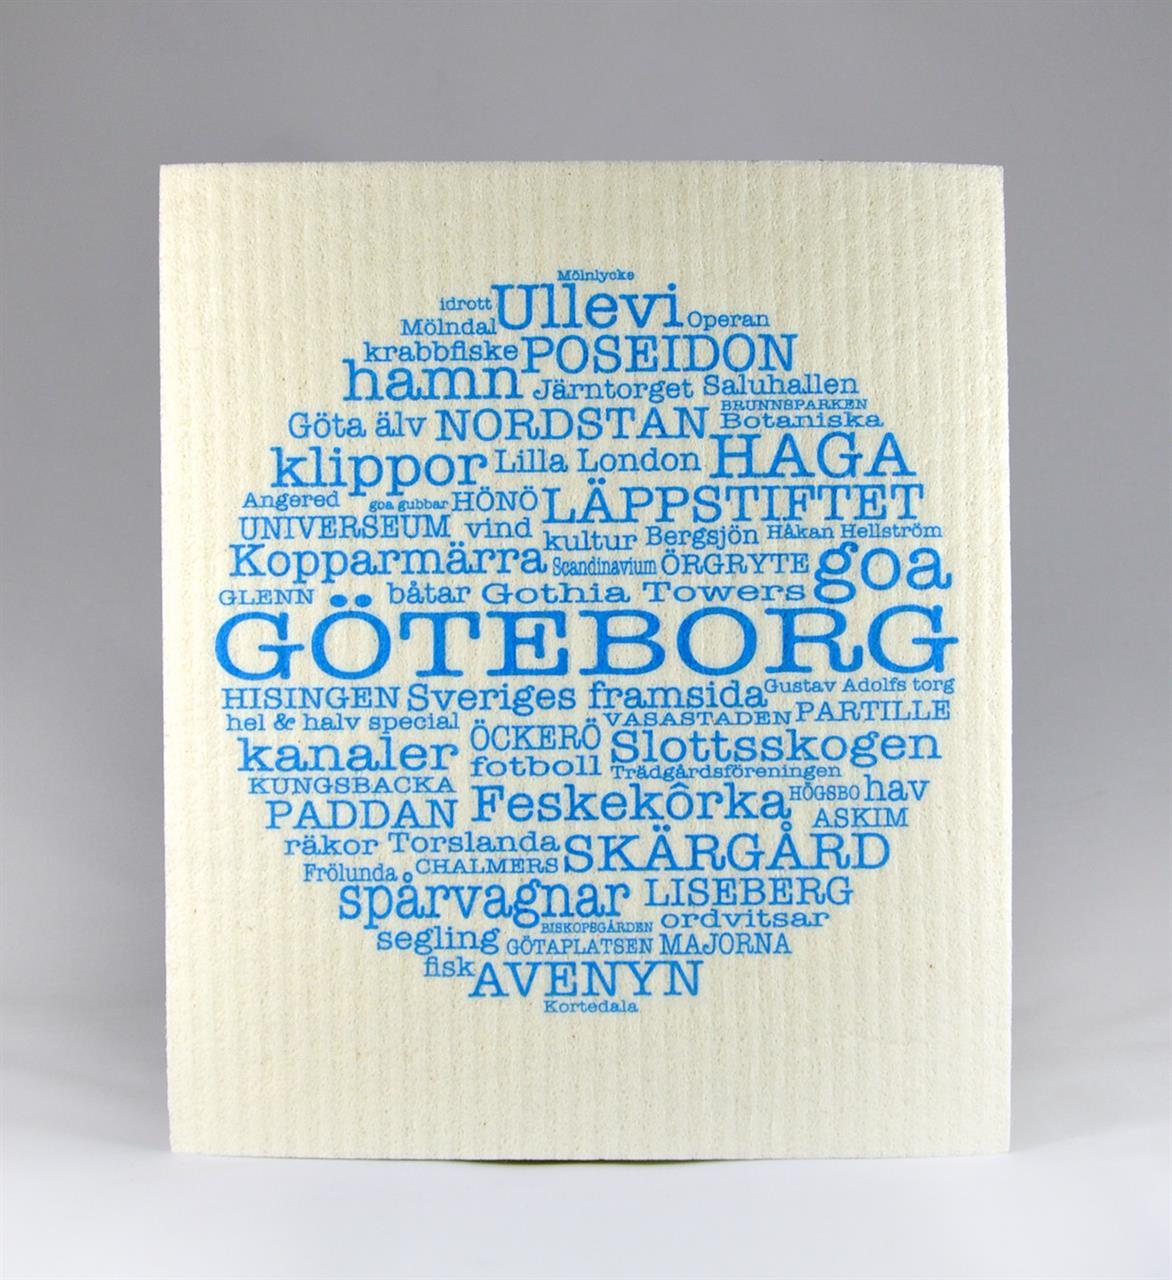 Disktrasa, Göteborg, vit/blå text